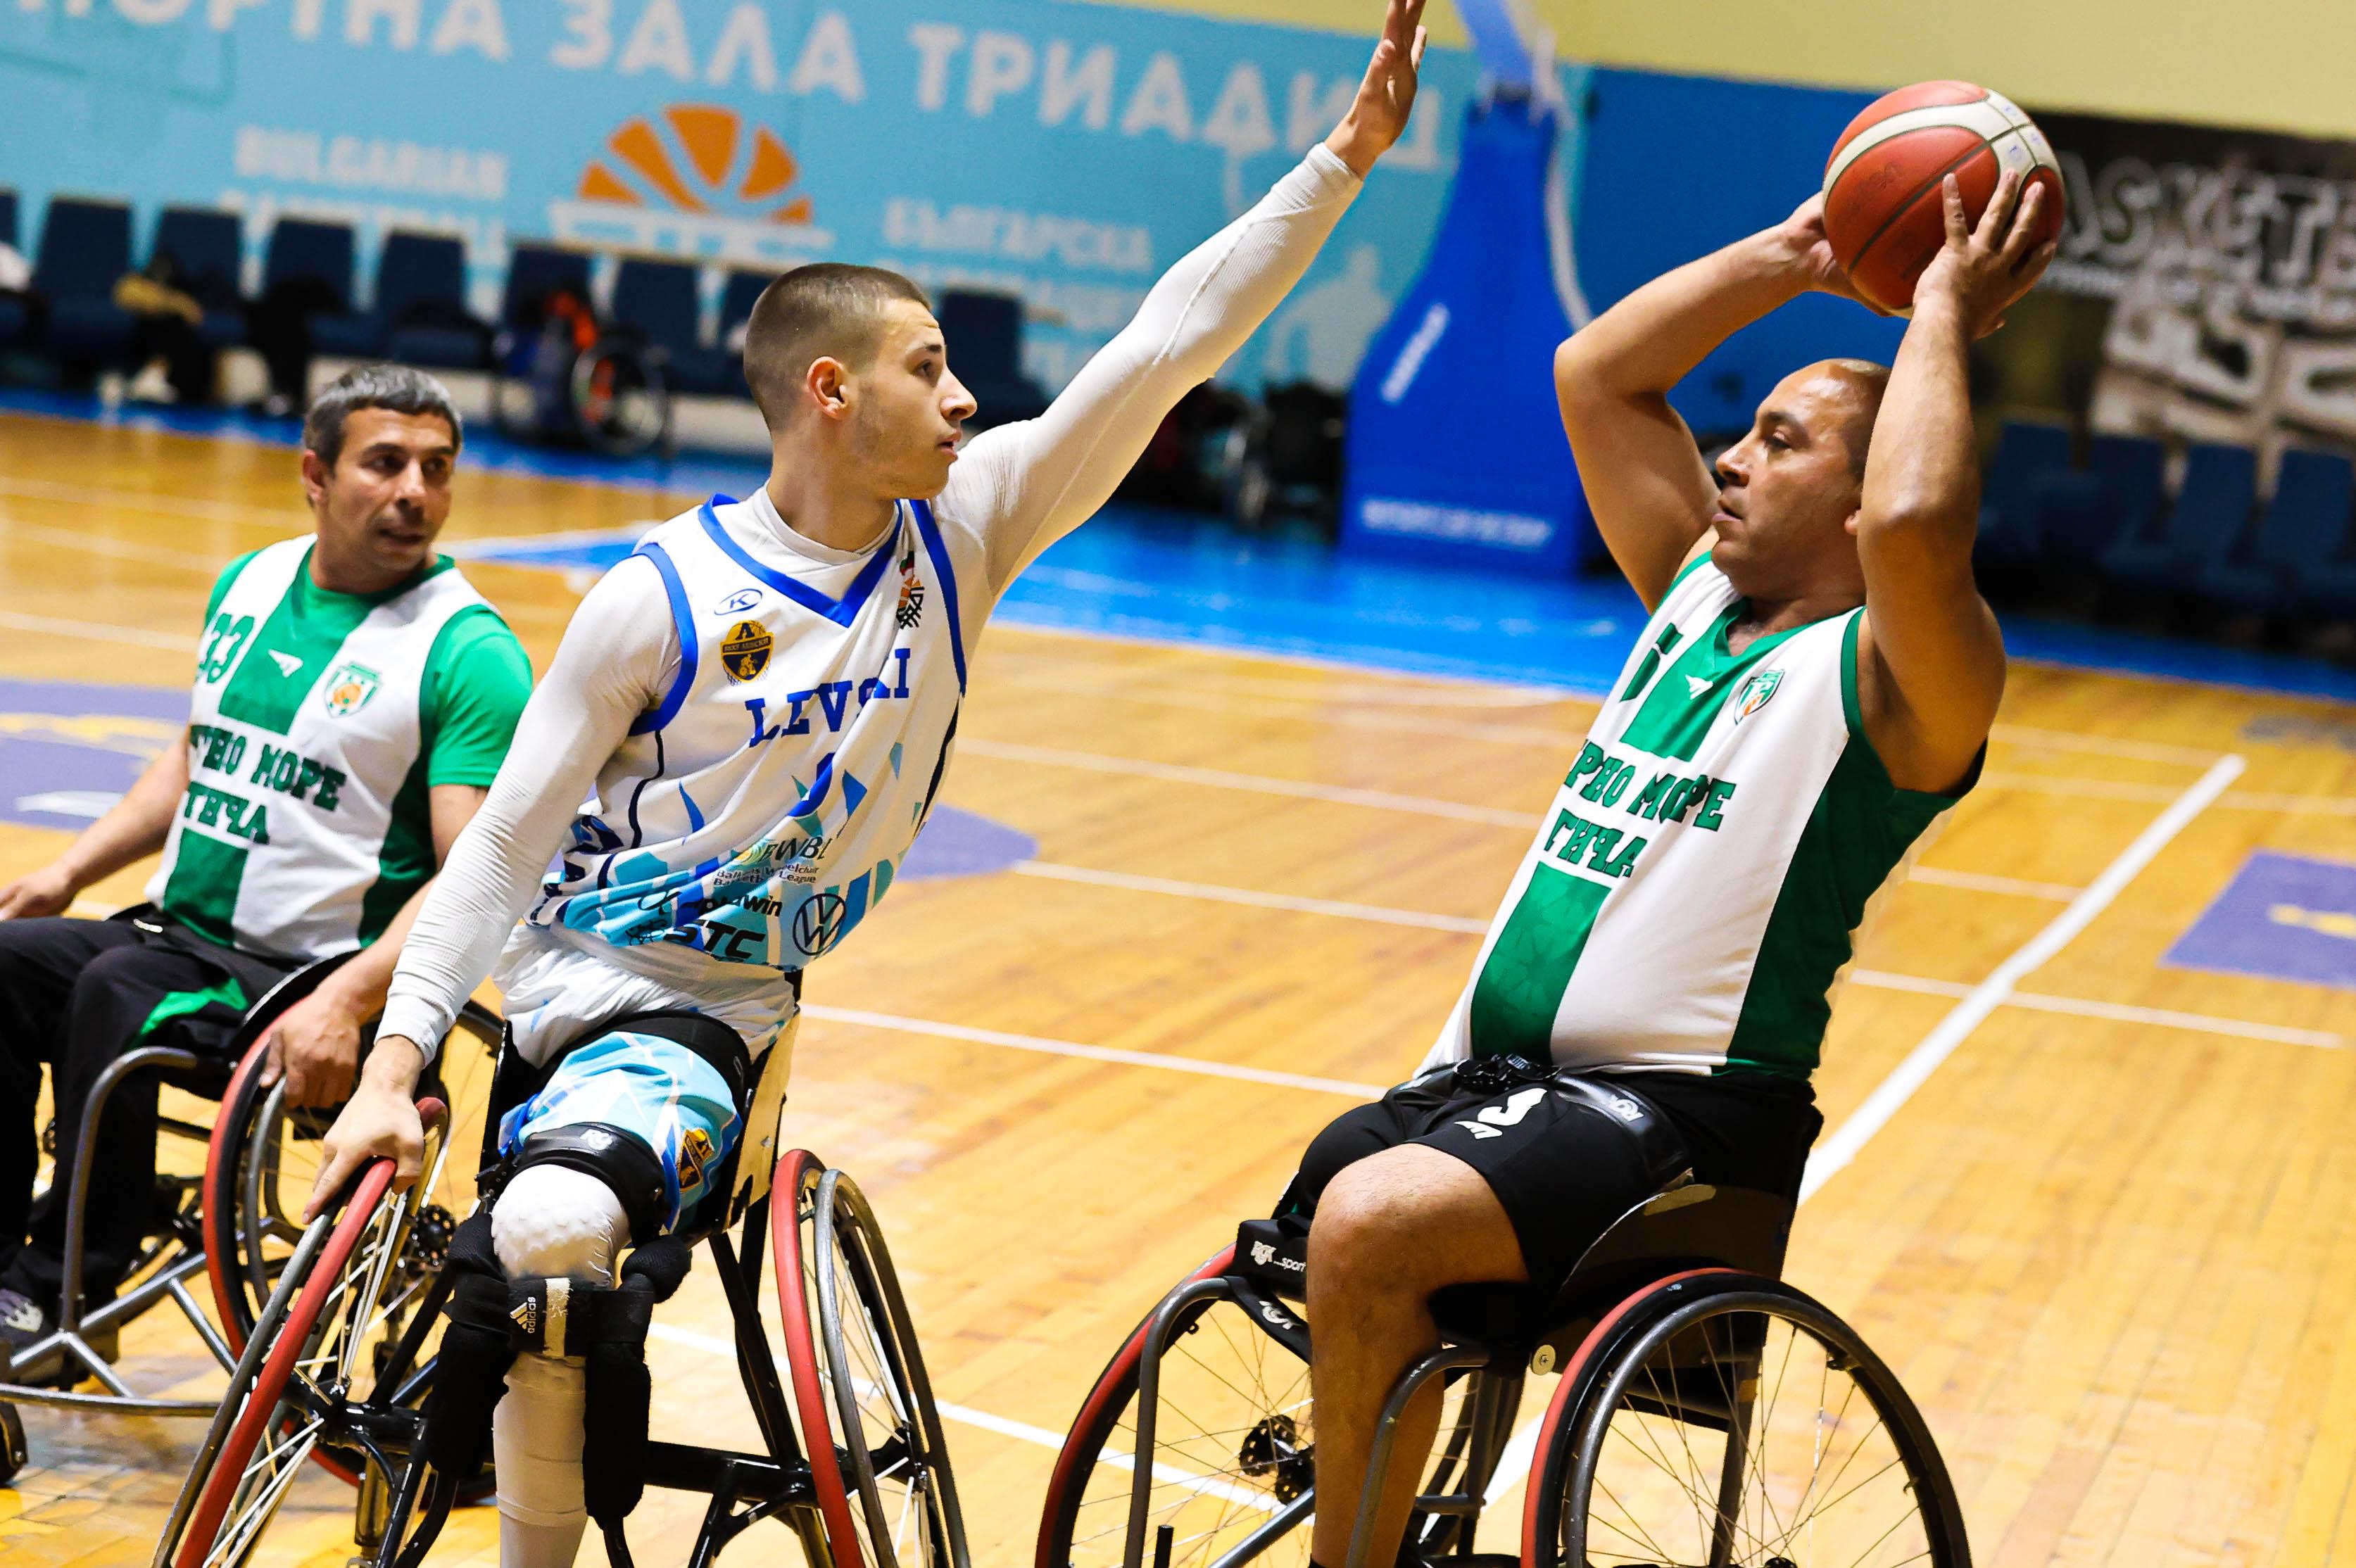 Вдъхновяващо: Баскетболисти на колички мериха сили в София